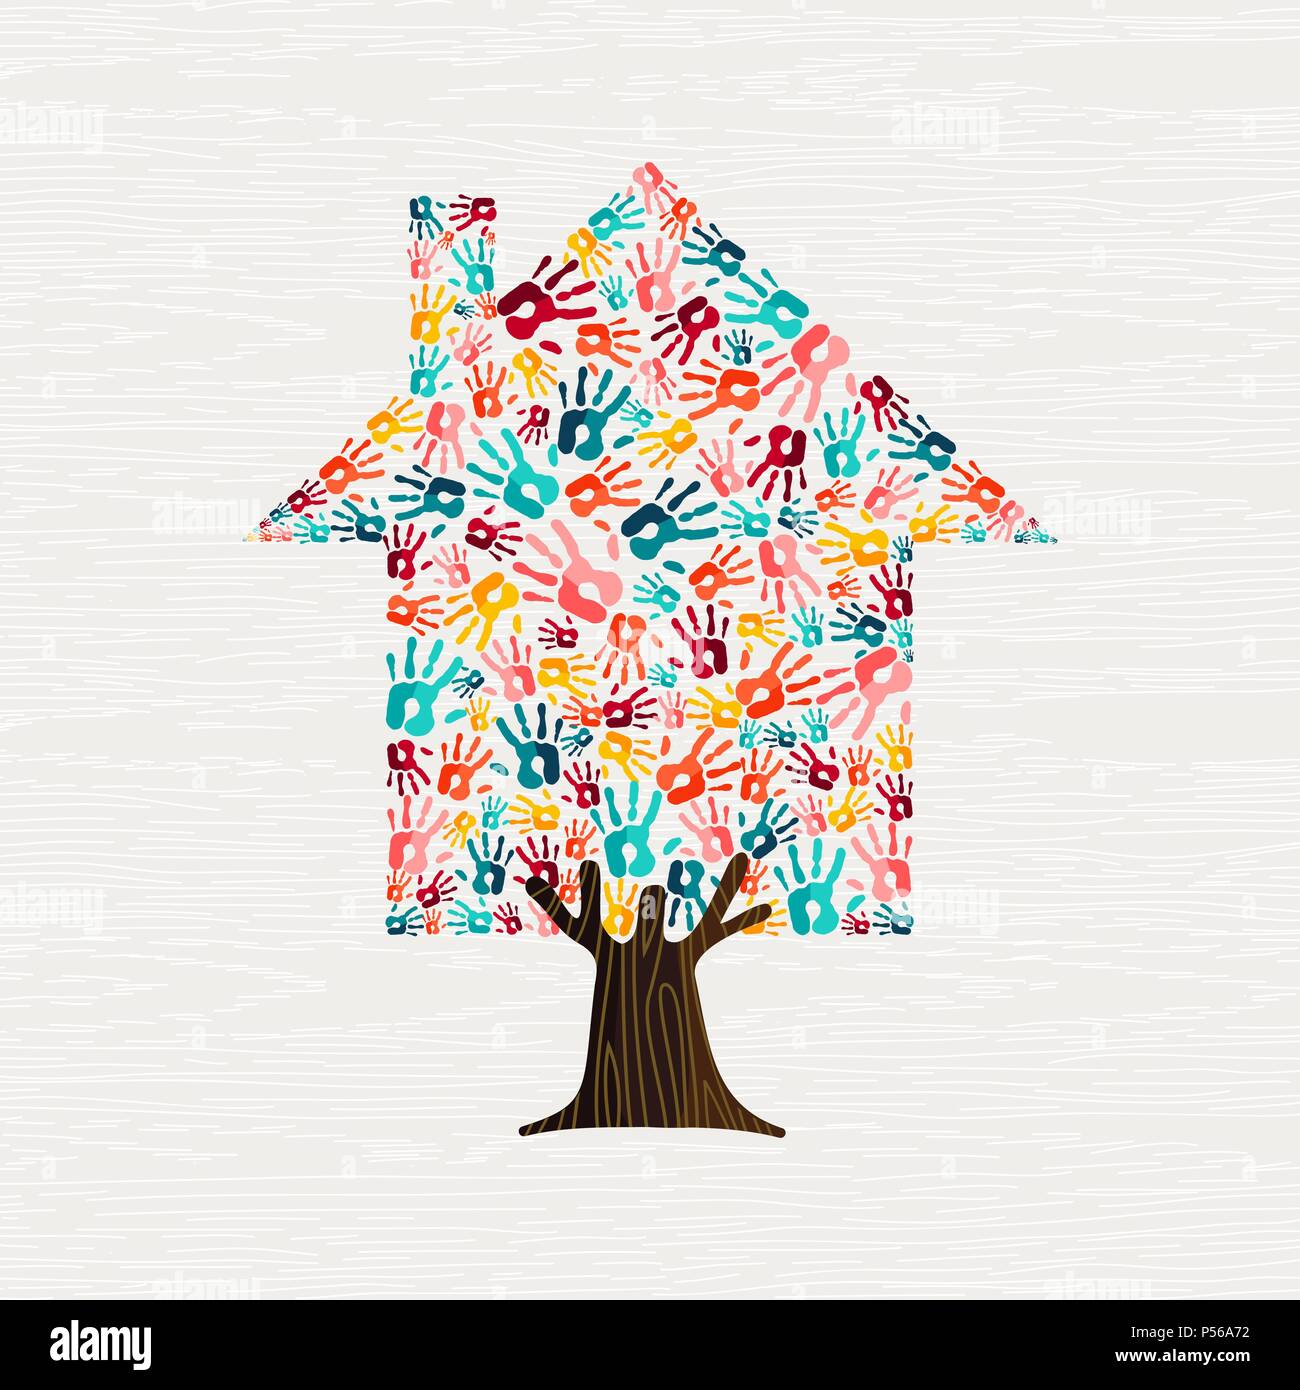 Arborescence constituée de mains humaines colorées en forme de maison. Communauté accueil concept ou projet social. Vecteur EPS10. Illustration de Vecteur